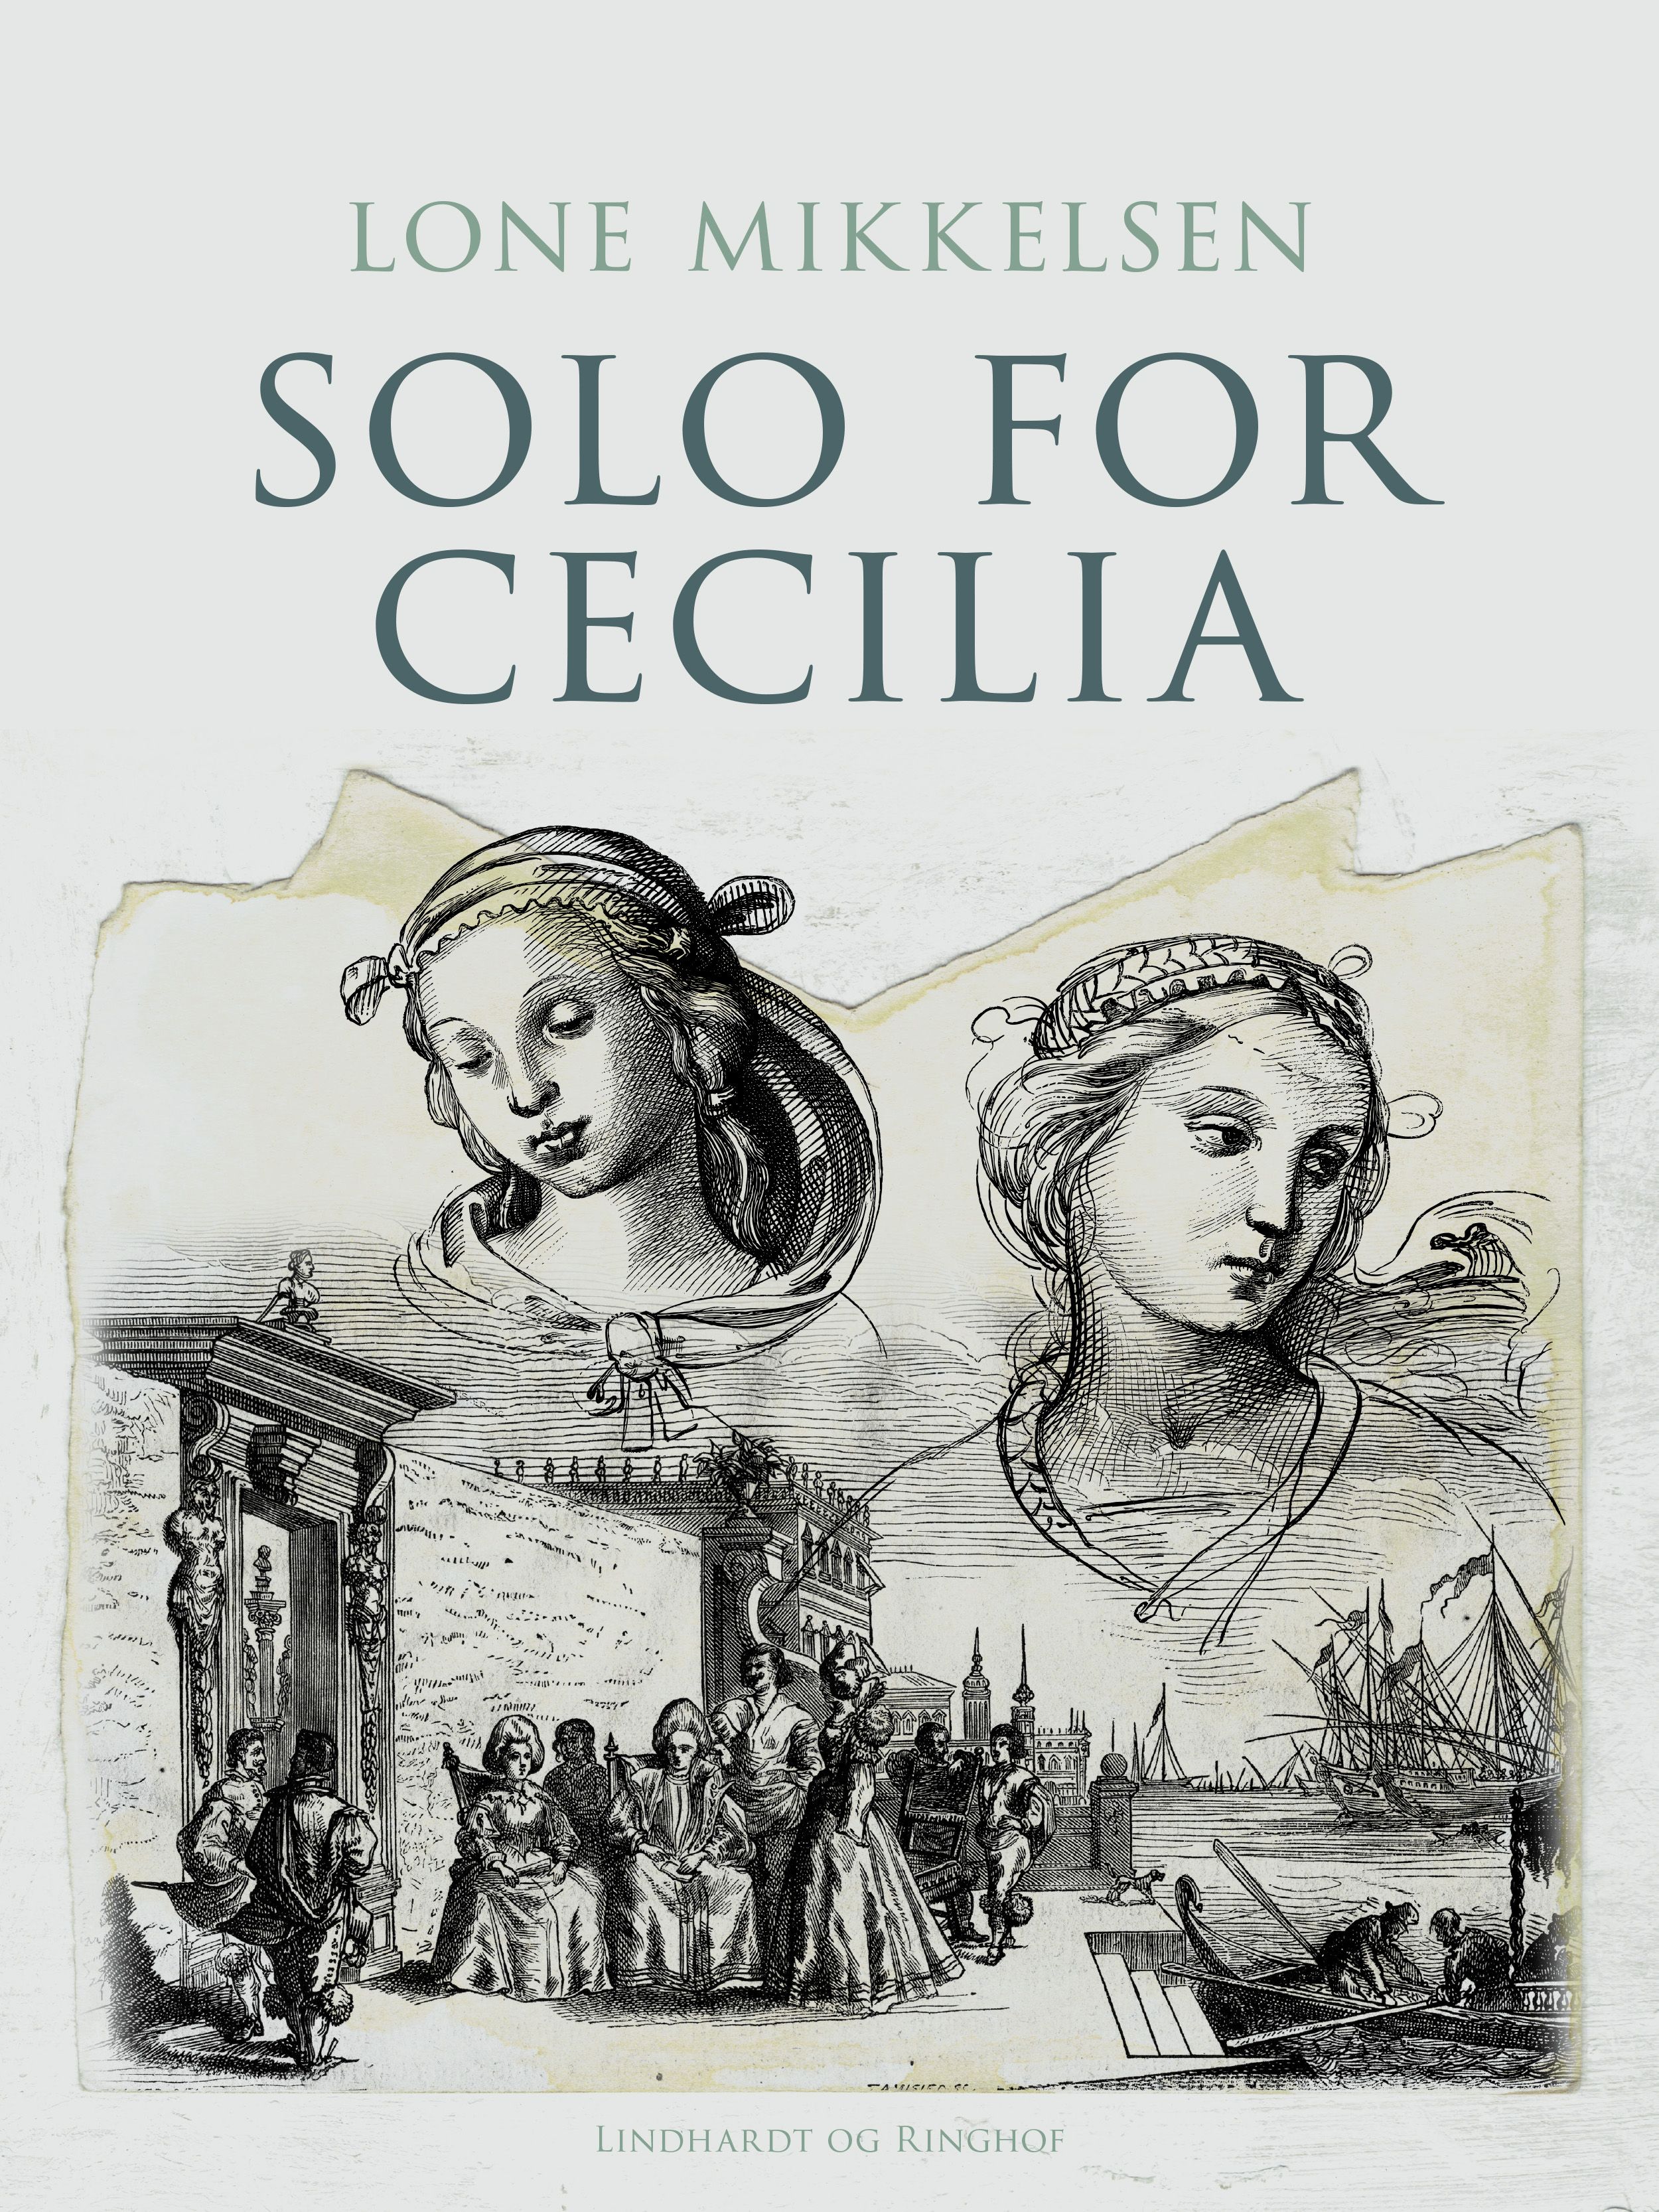 Solo for Cecilia, e-bok av Lone Mikkelsen